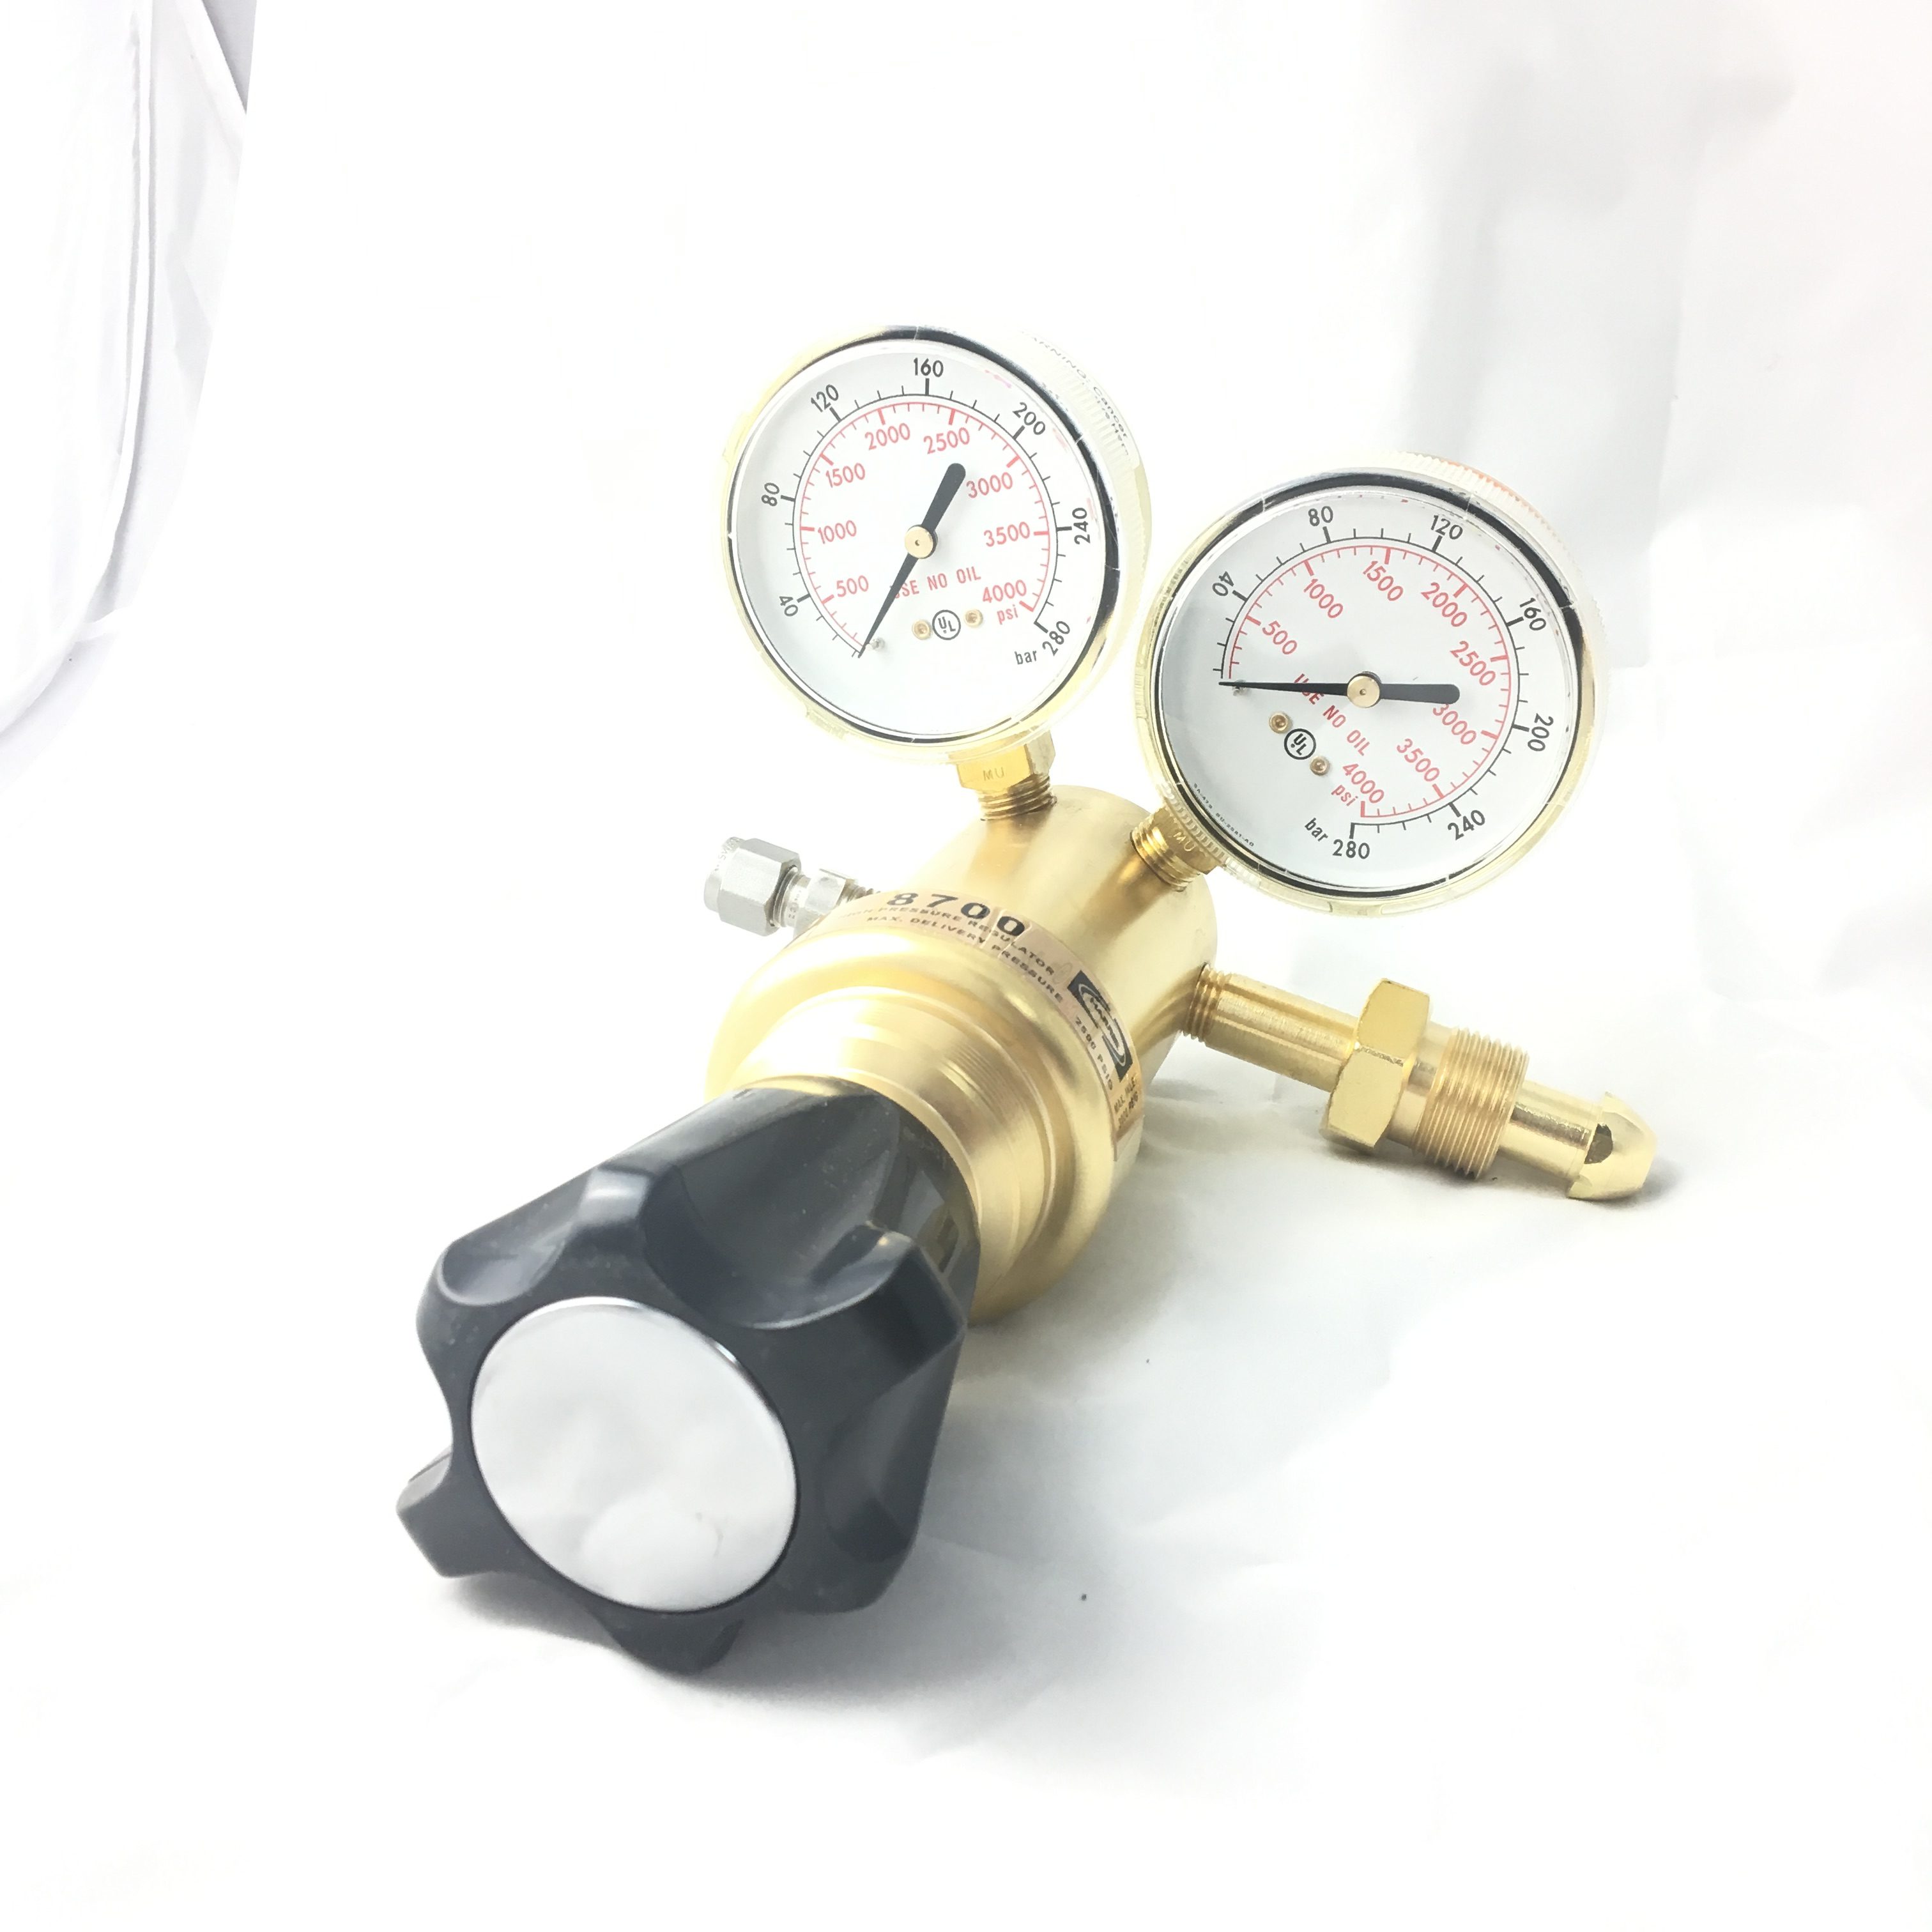 Nitrogen Pressure Gauge Pressure Gauges Nitrogen Regulator for Industrial Use Industrial Nitrogen Pressure Gauge Nitrogen Pressure Regulator Gauge 